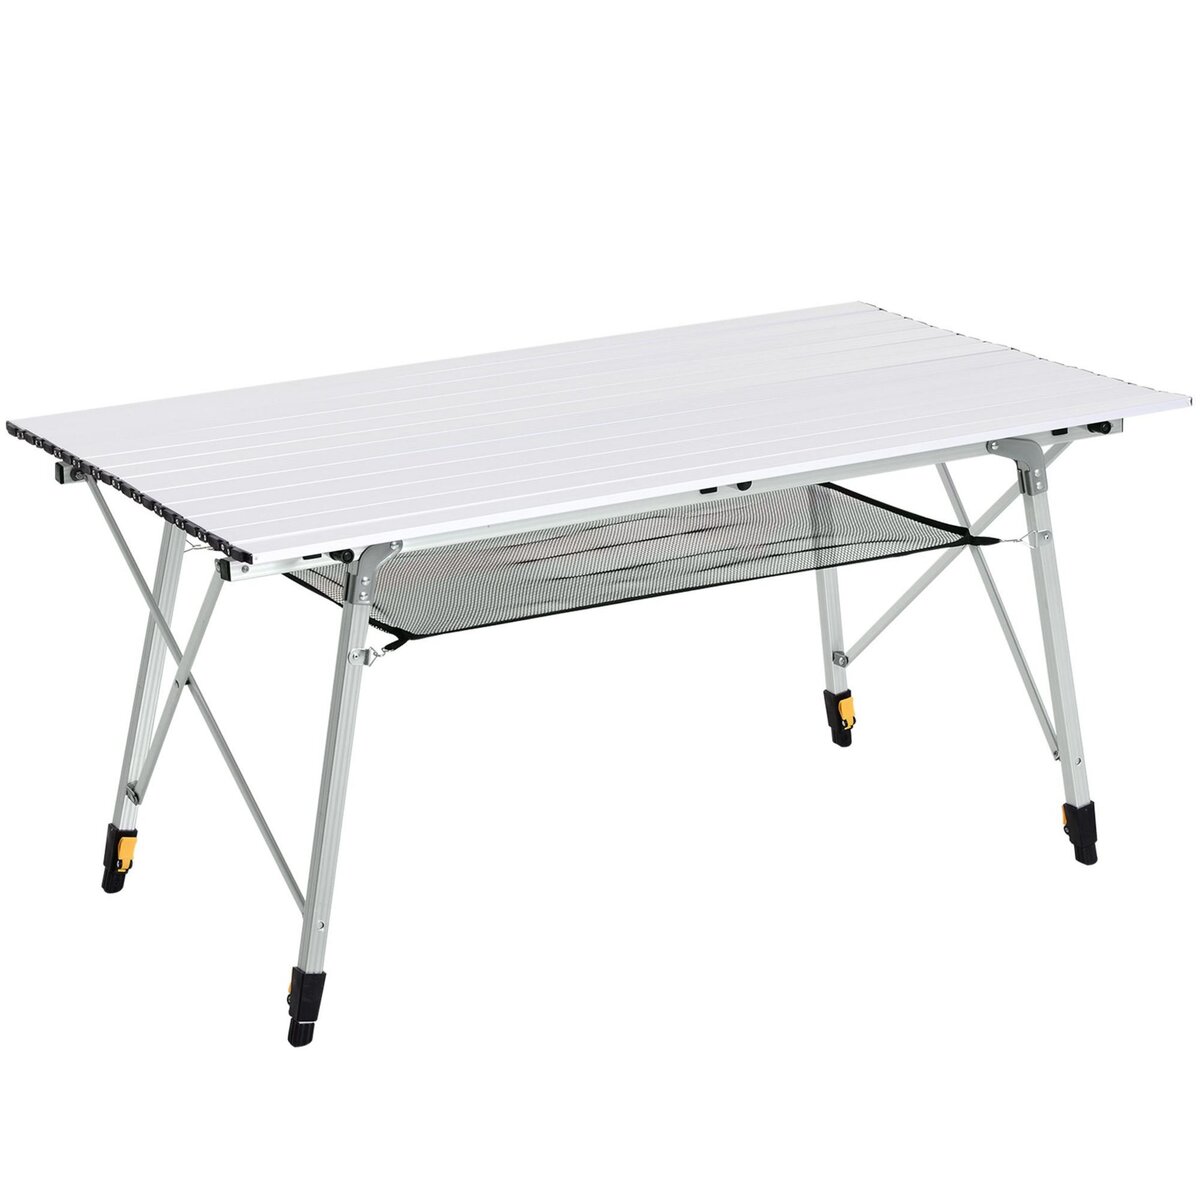 OUTSUNNY Table pliante en aluminium table de camping table de jardin 6 personnes hauteur réglable + sac de transport